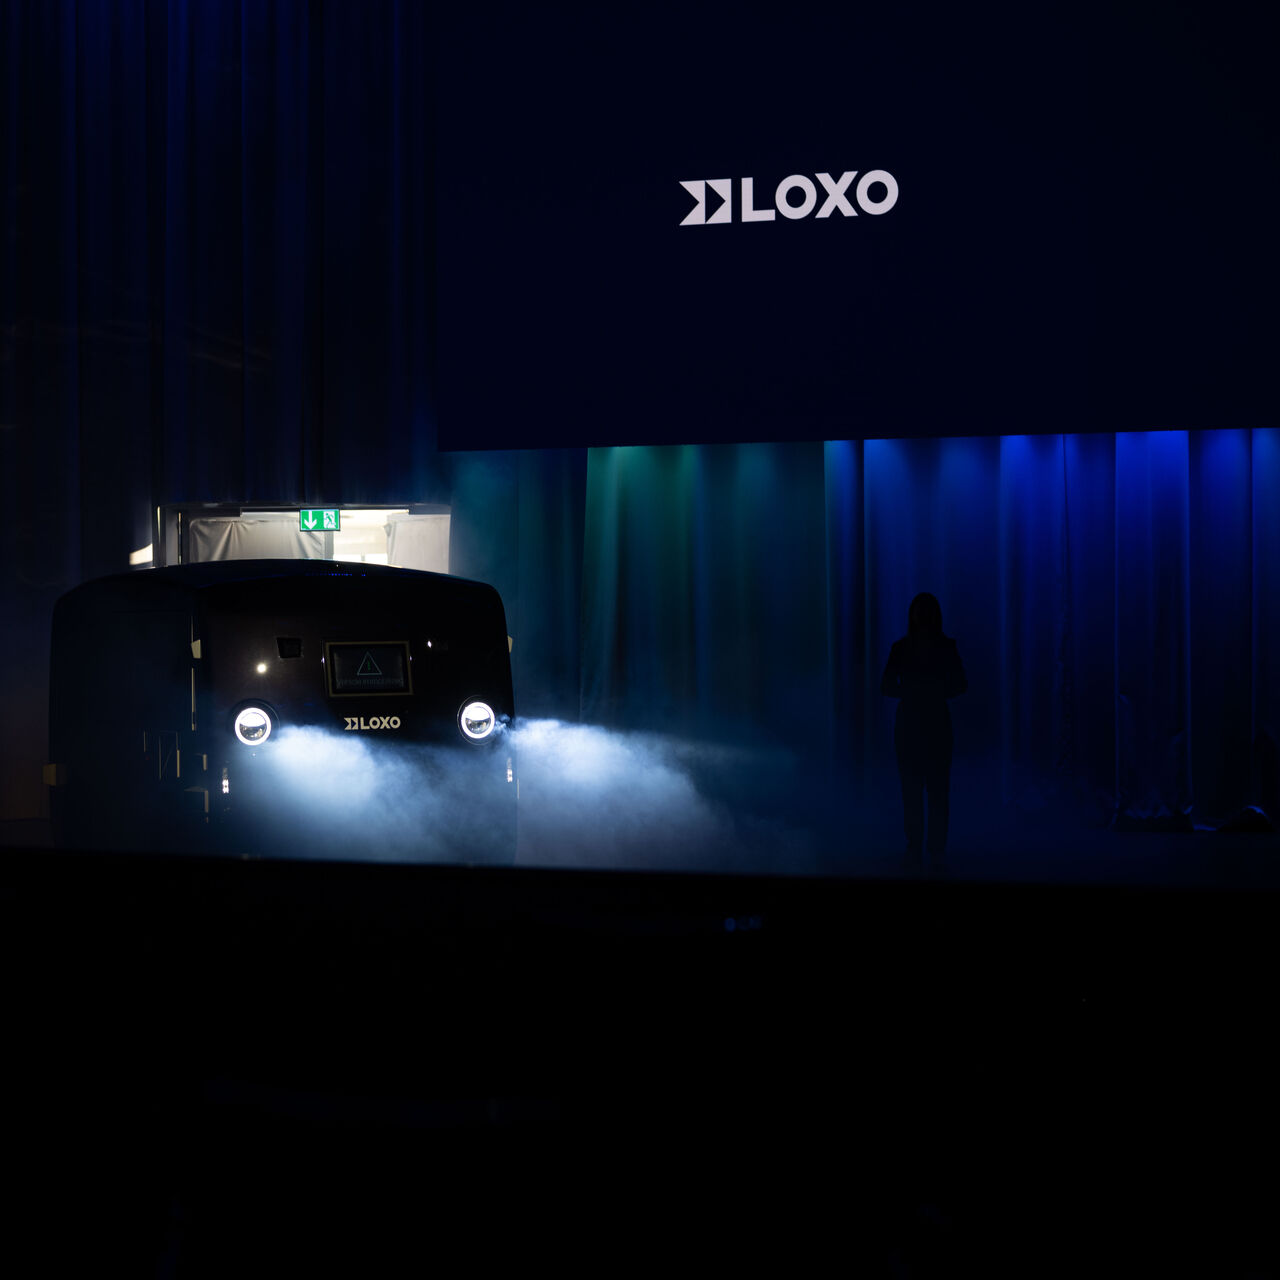 LOXO: Alpha tamamilə İsveçrədə hazırlanmış və 6 dekabr 2022-ci ildə Berndəki Kursaalda startap LOXO tərəfindən keçirilən mətbuat konfransı zamanı təqdim edilən özü idarə olunan furqondur.